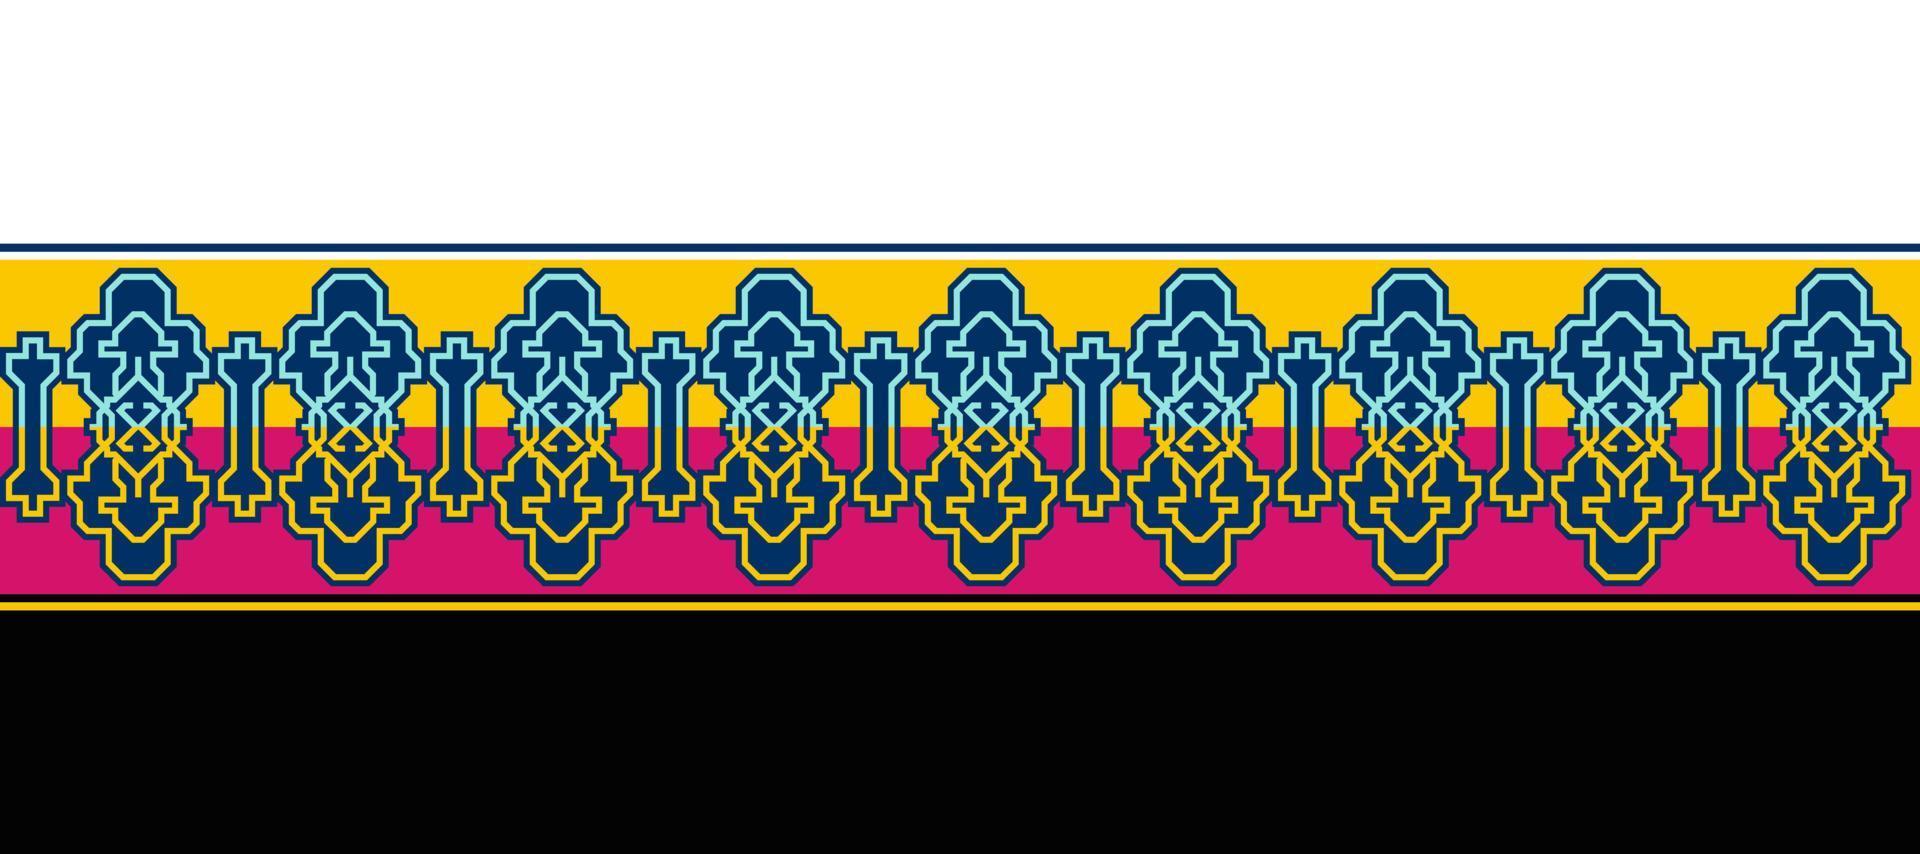 batik patrón diseño 82 ropa deporte desgaste sublimación papel pintado fondo vector